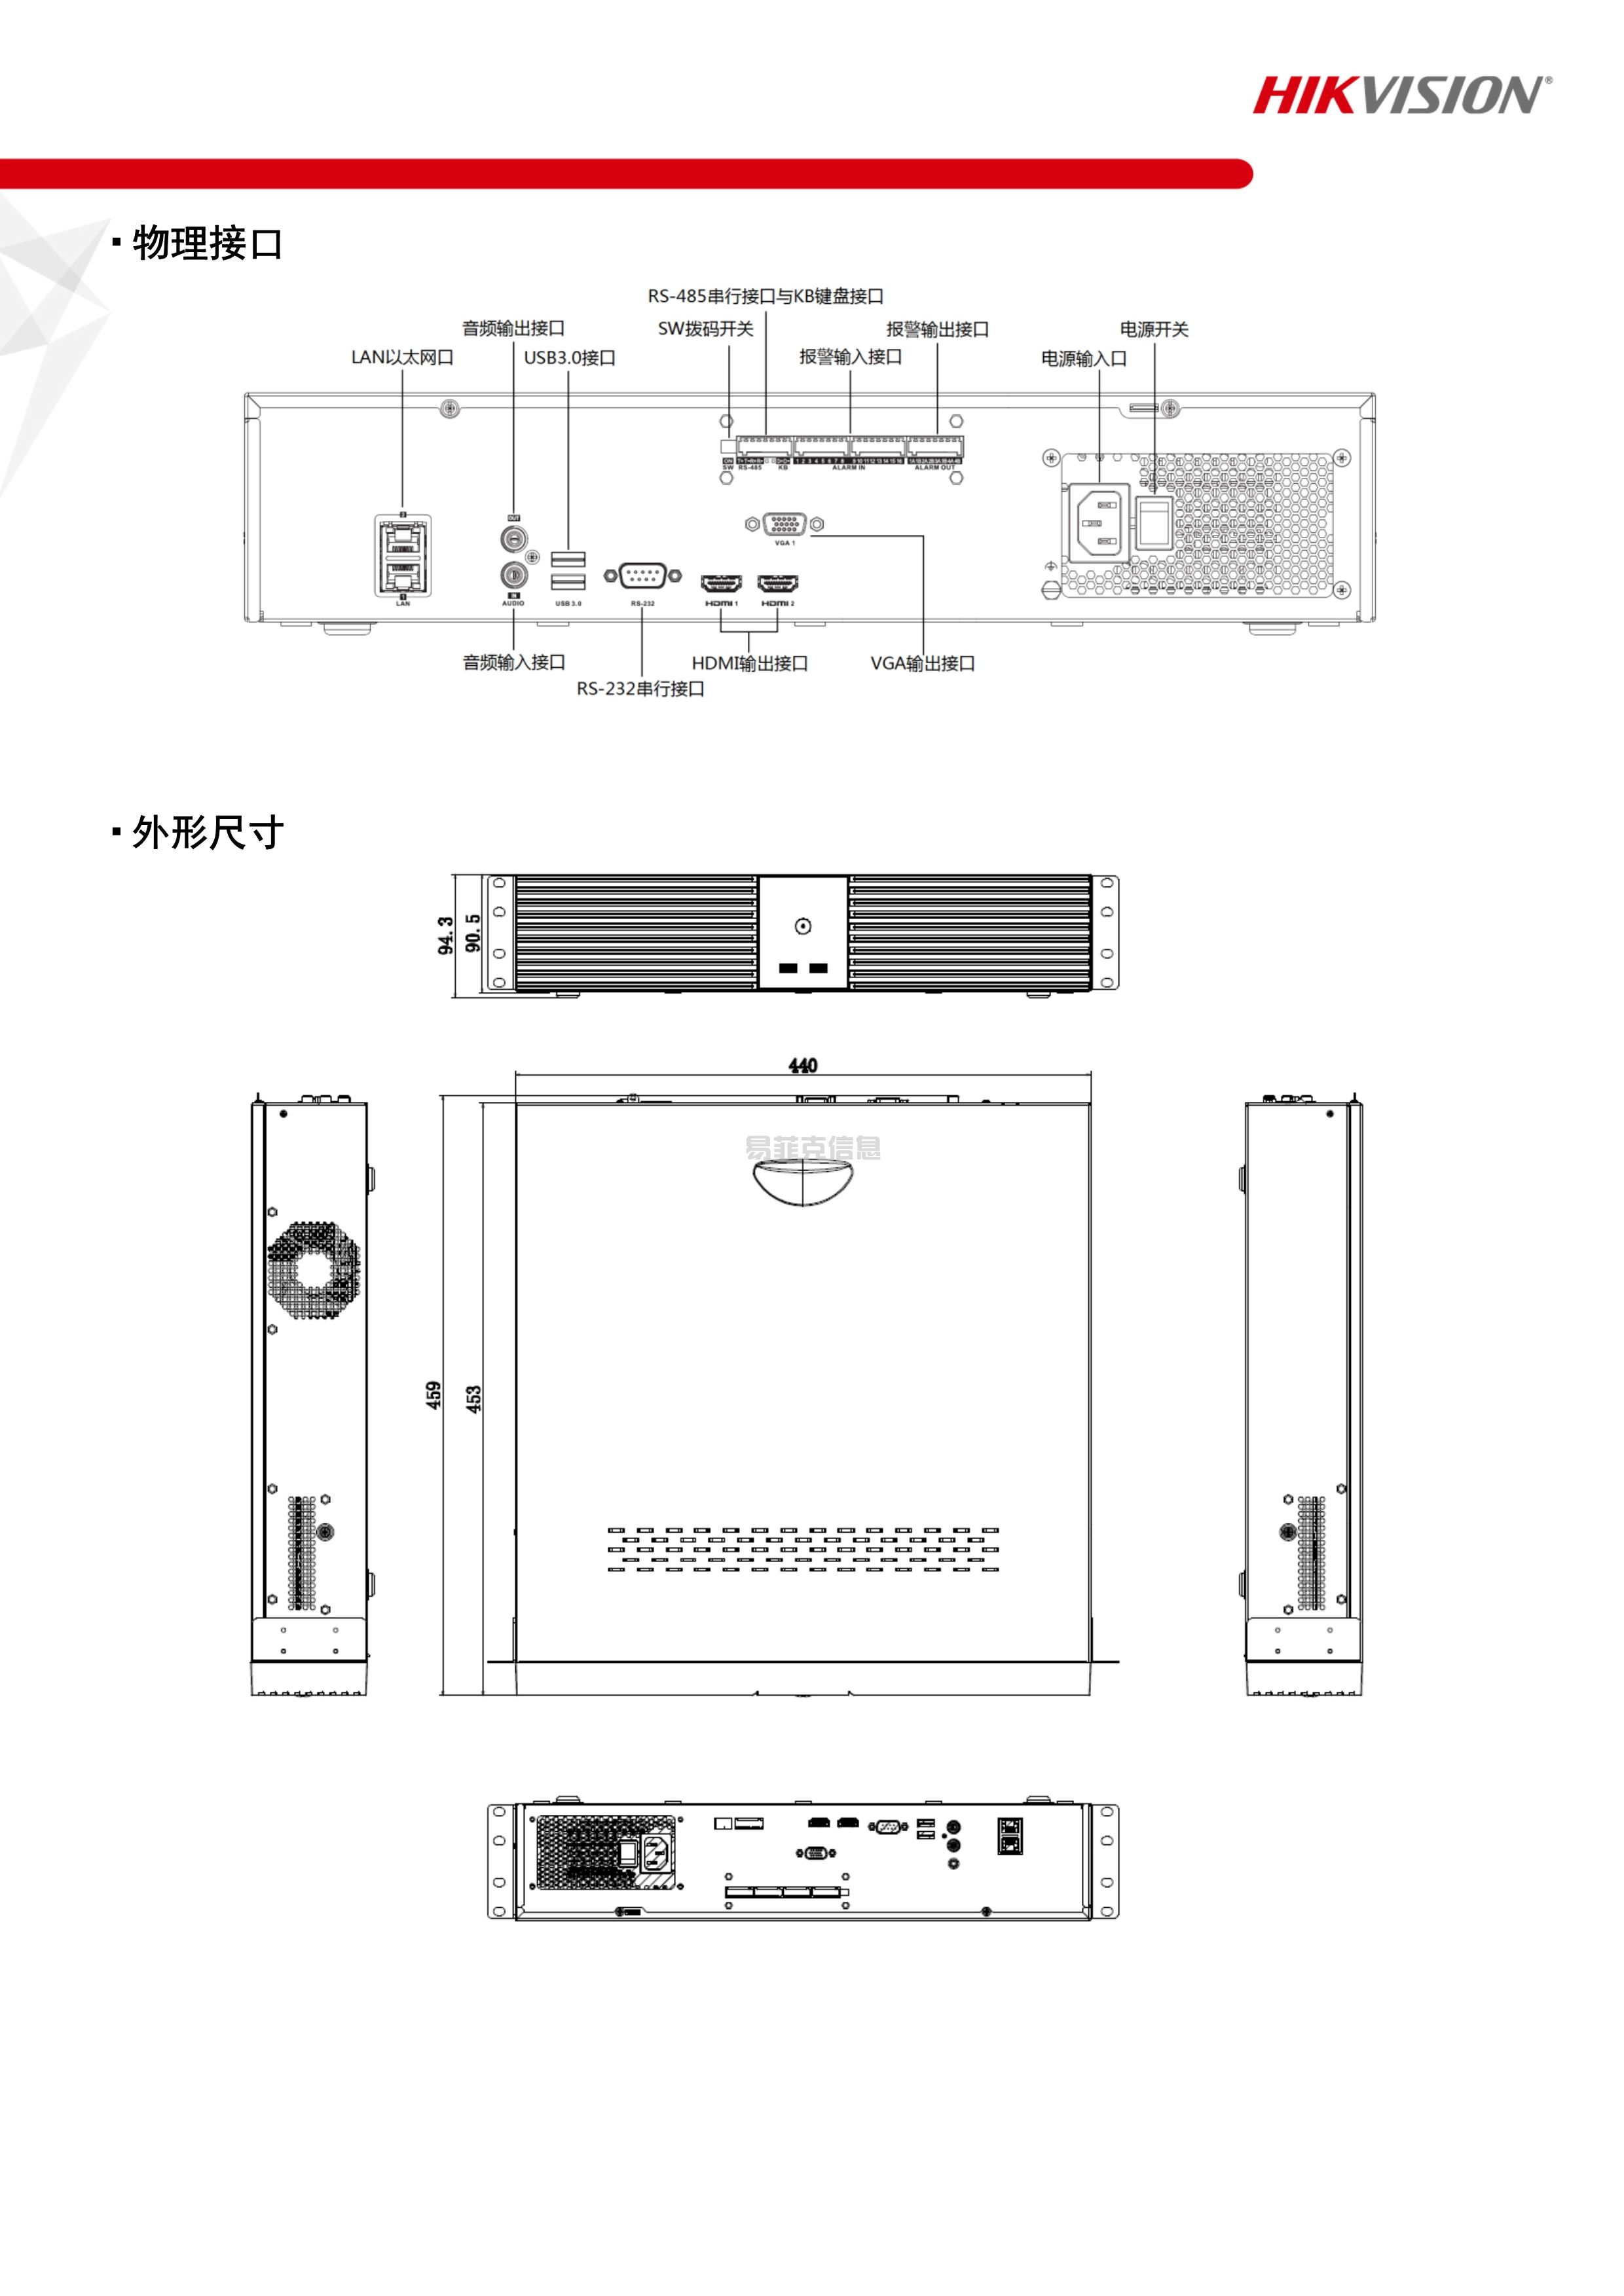 硬盘录像机(NVR)/DS-8832N-R8/4K(图4)